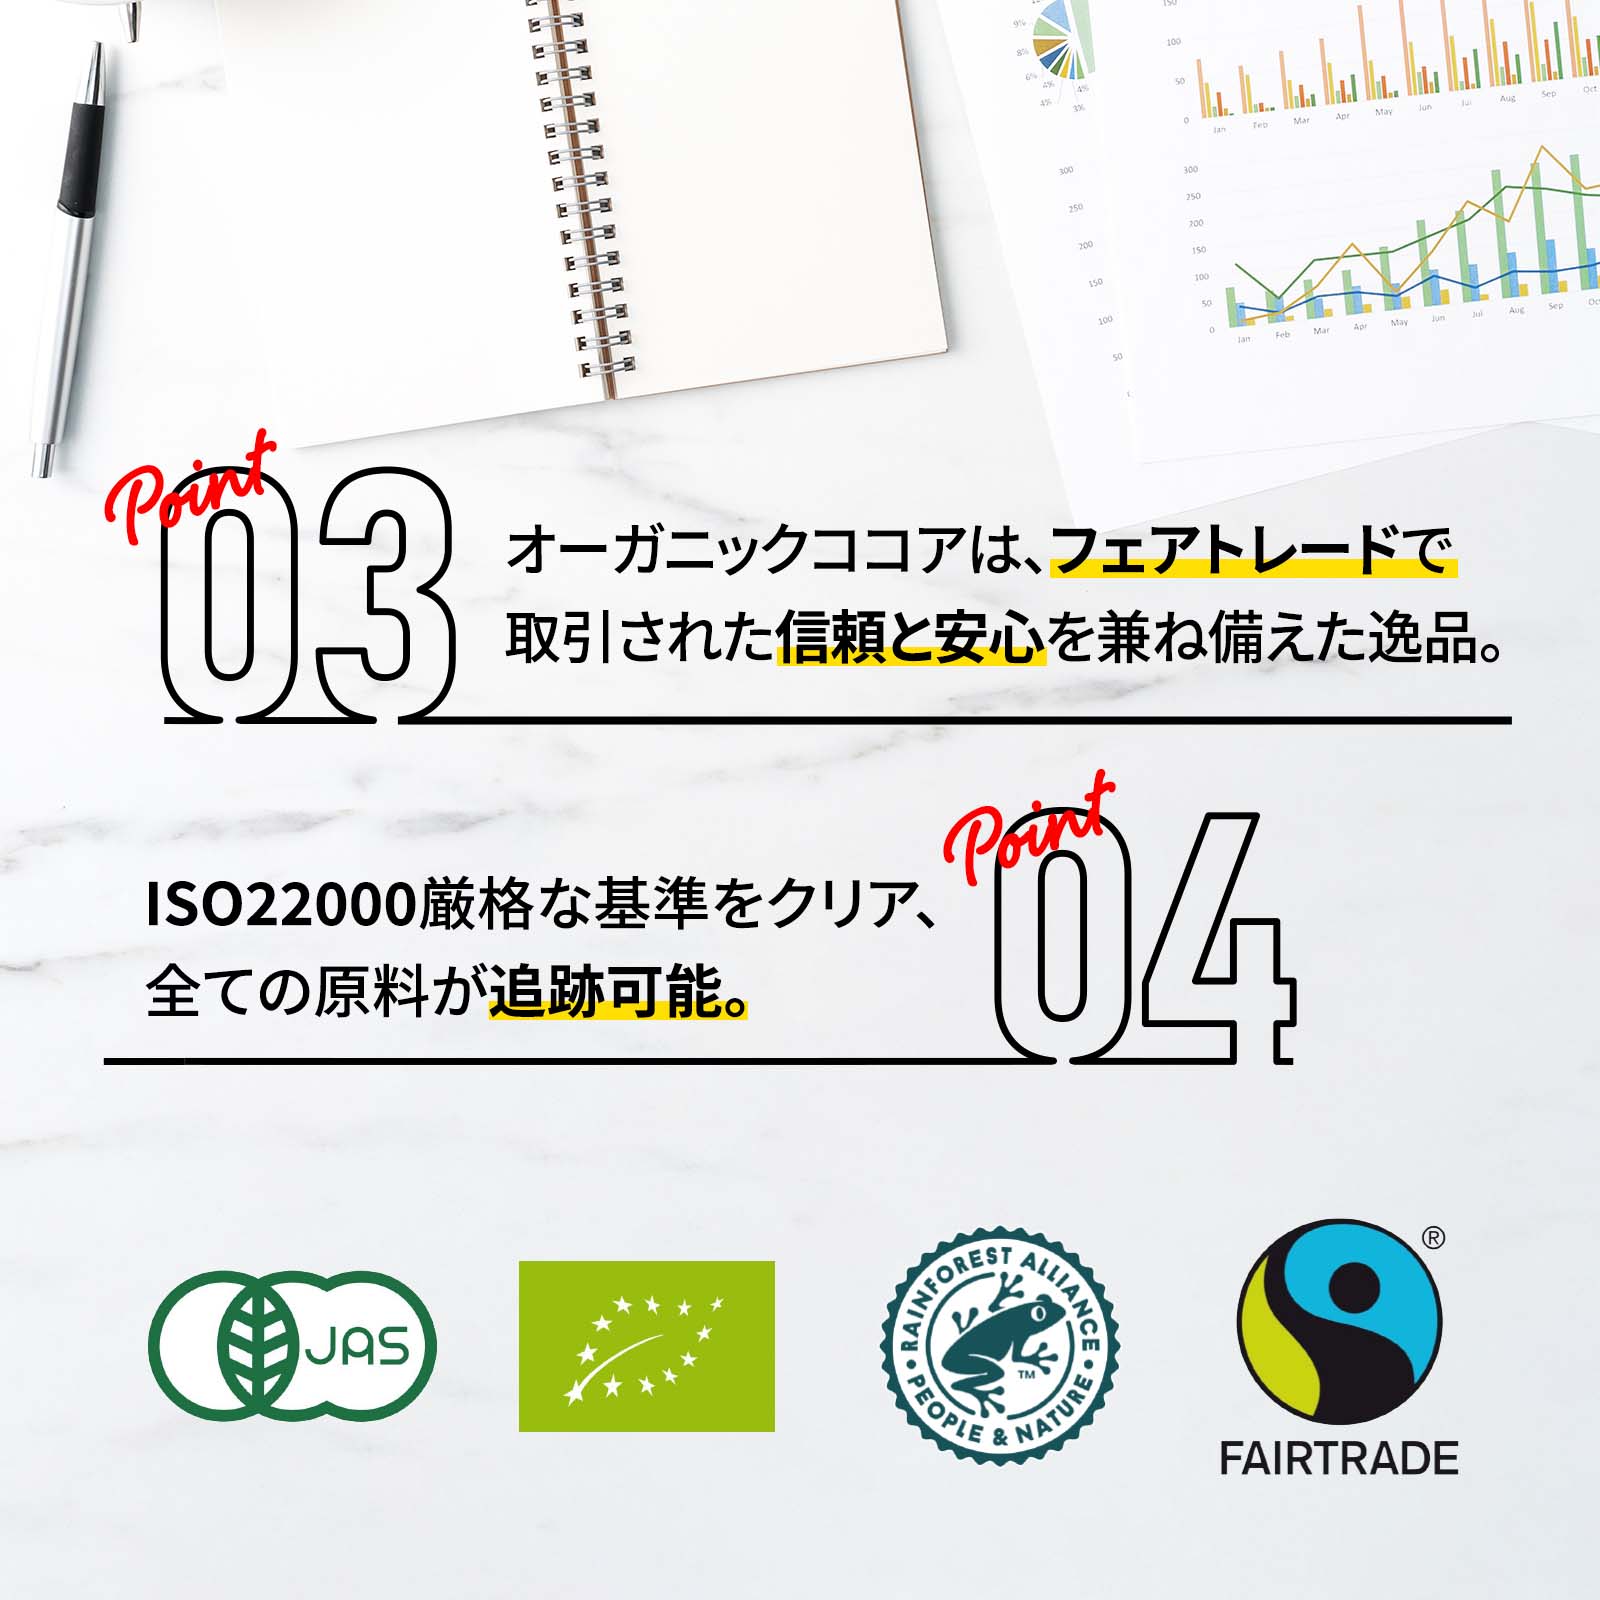 グラスフェッド自然派ホエイプロテイン ココア味 1000g - Fuji Organics